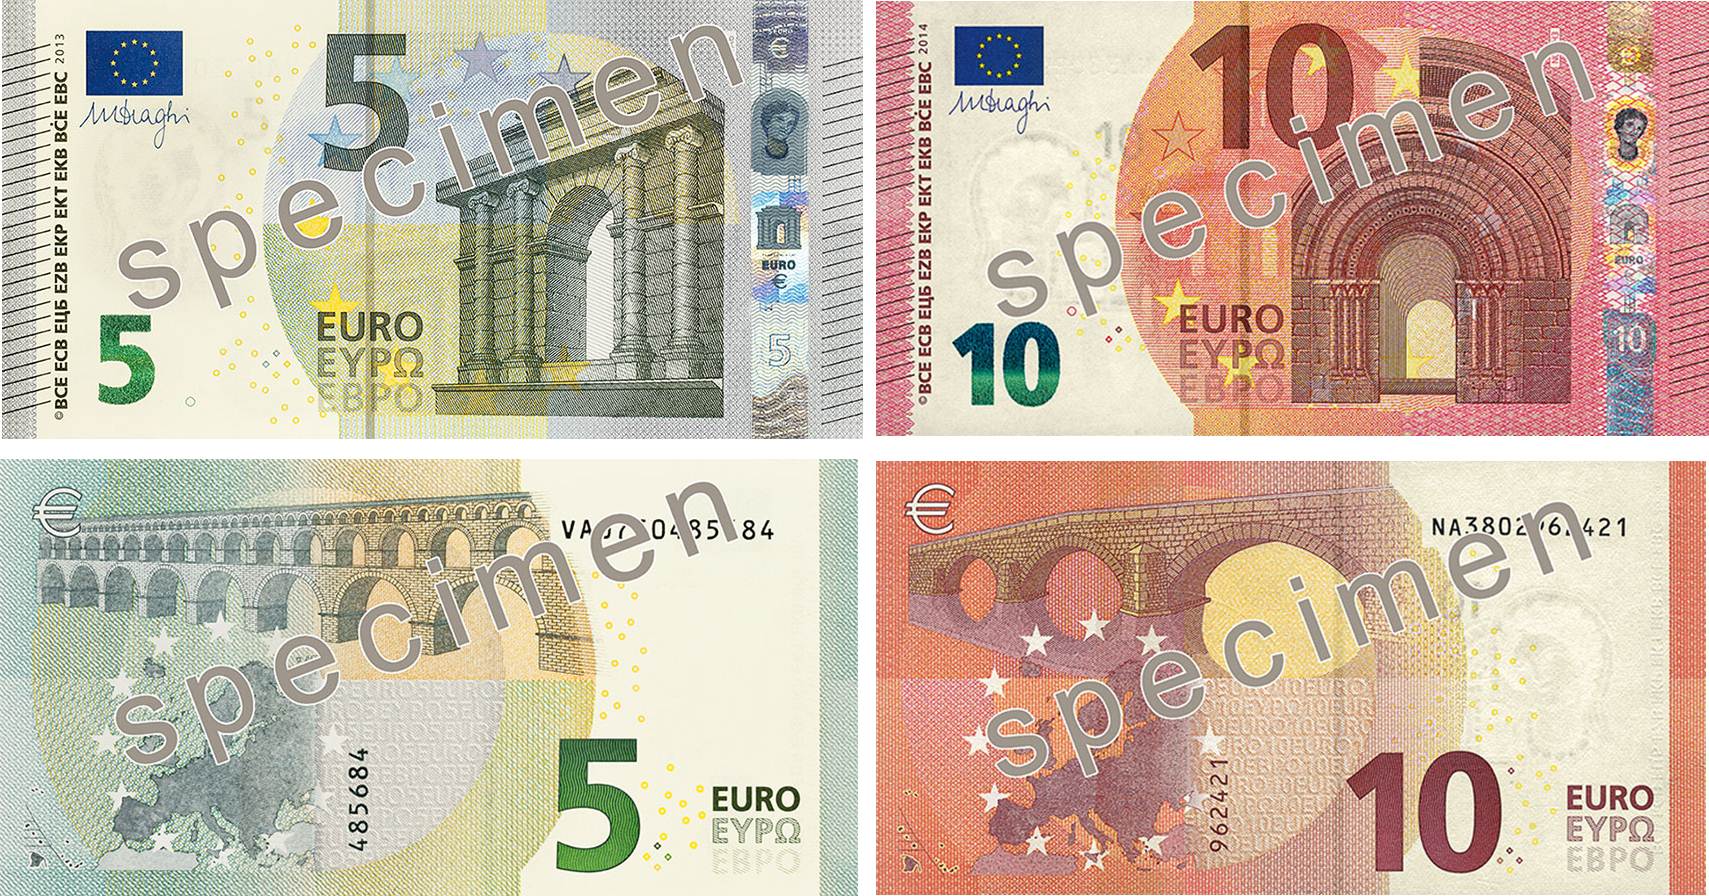 Notas de 5 e 10 euros da série Europa